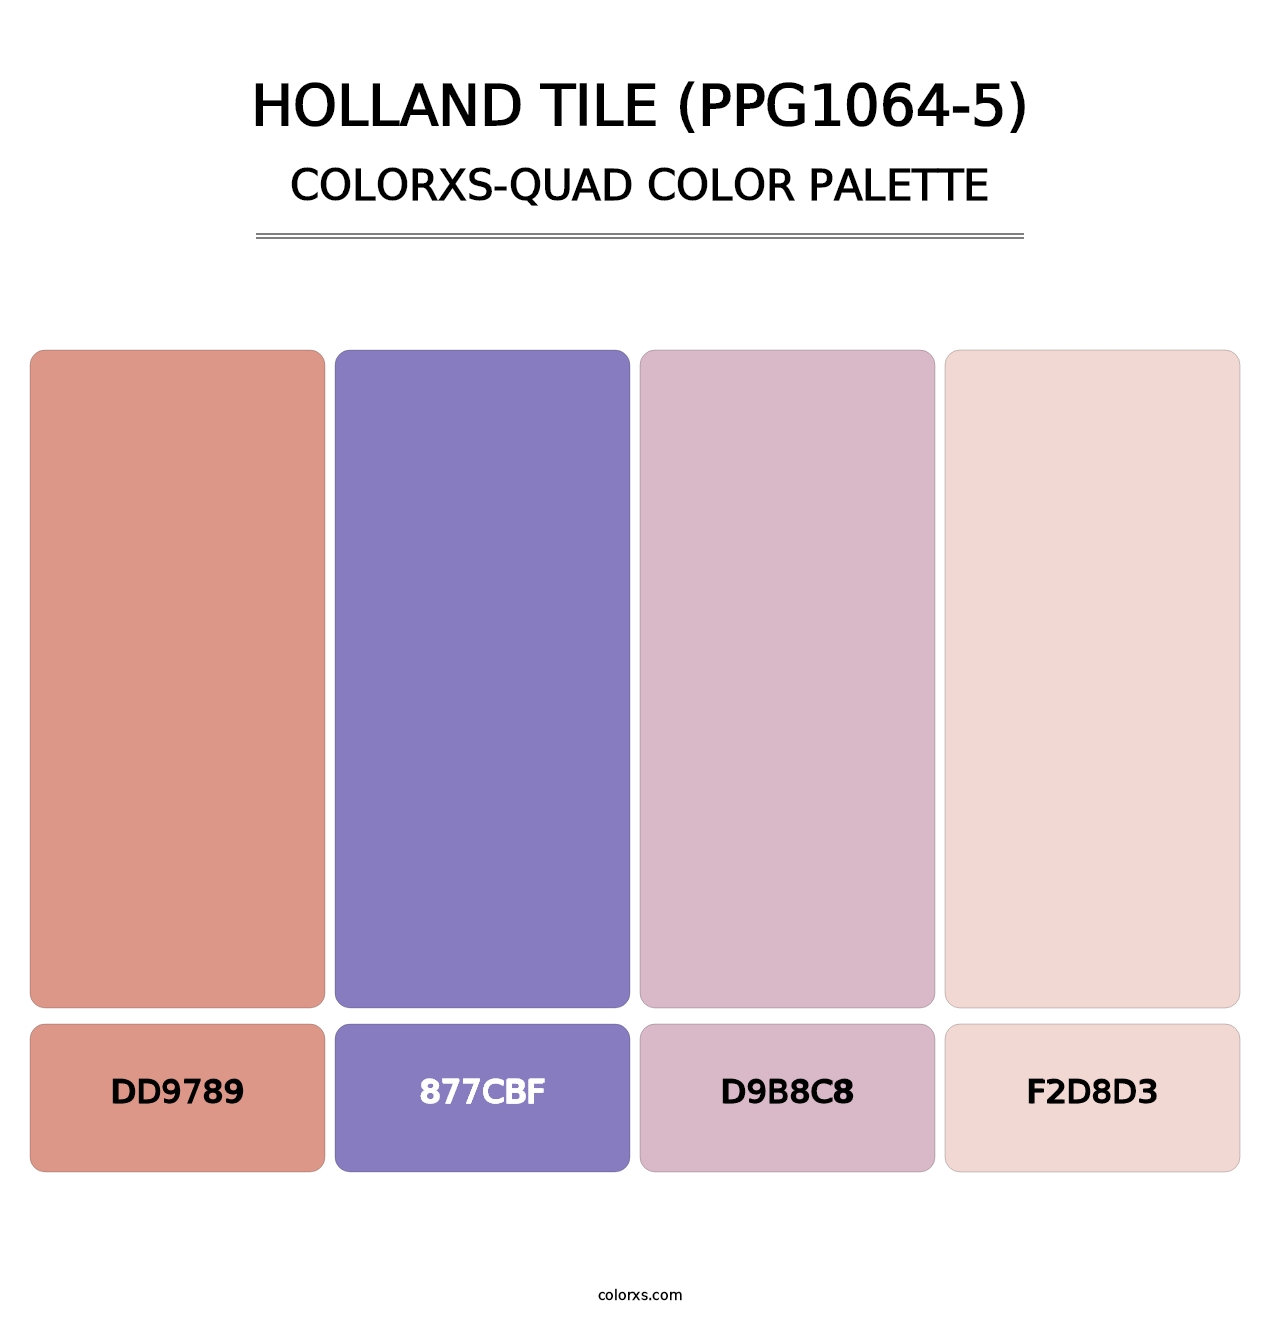 Holland Tile (PPG1064-5) - Colorxs Quad Palette